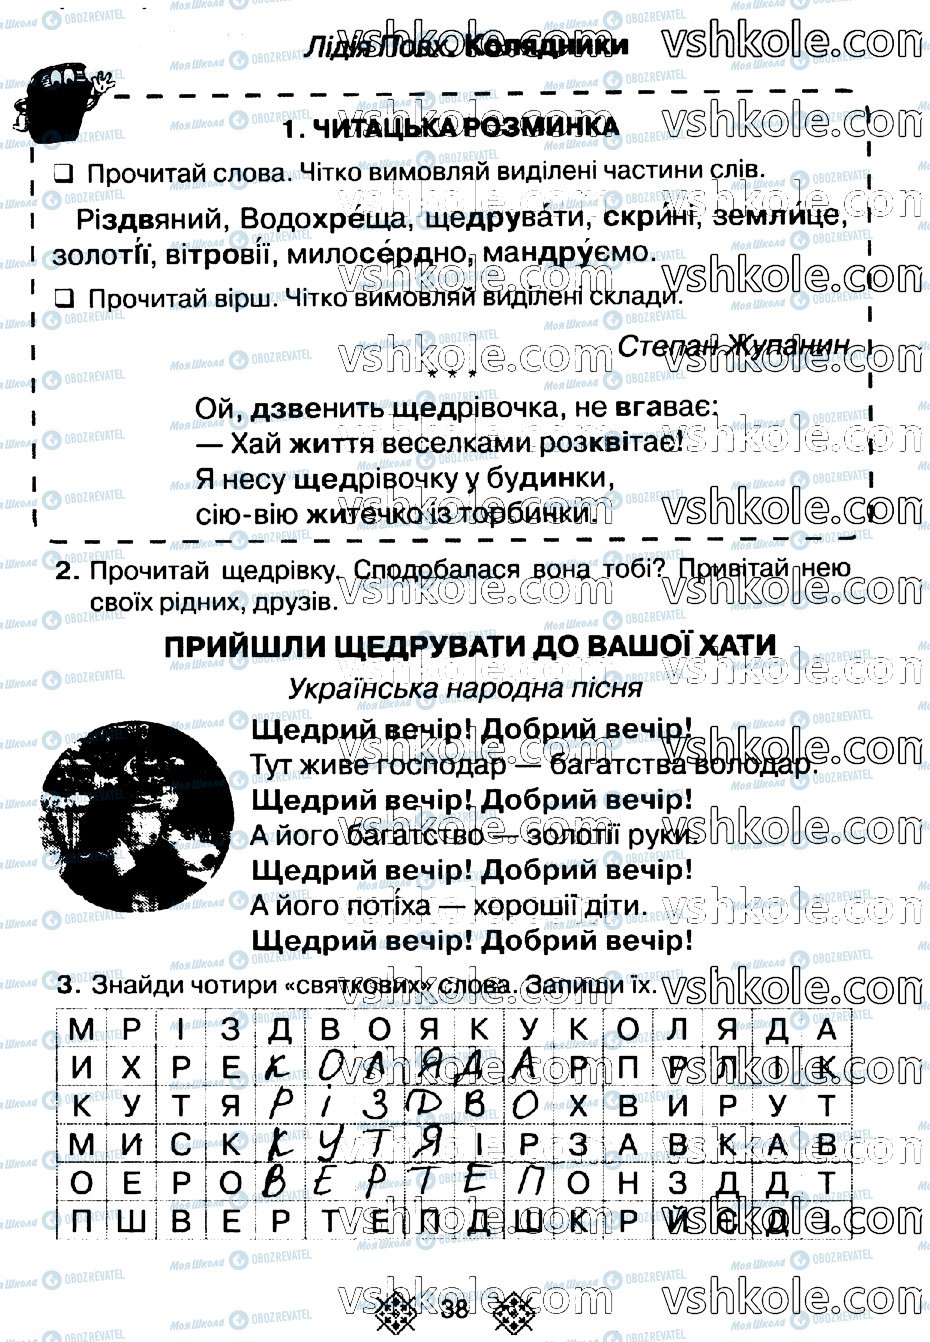 ГДЗ Укр мова 2 класс страница стр38